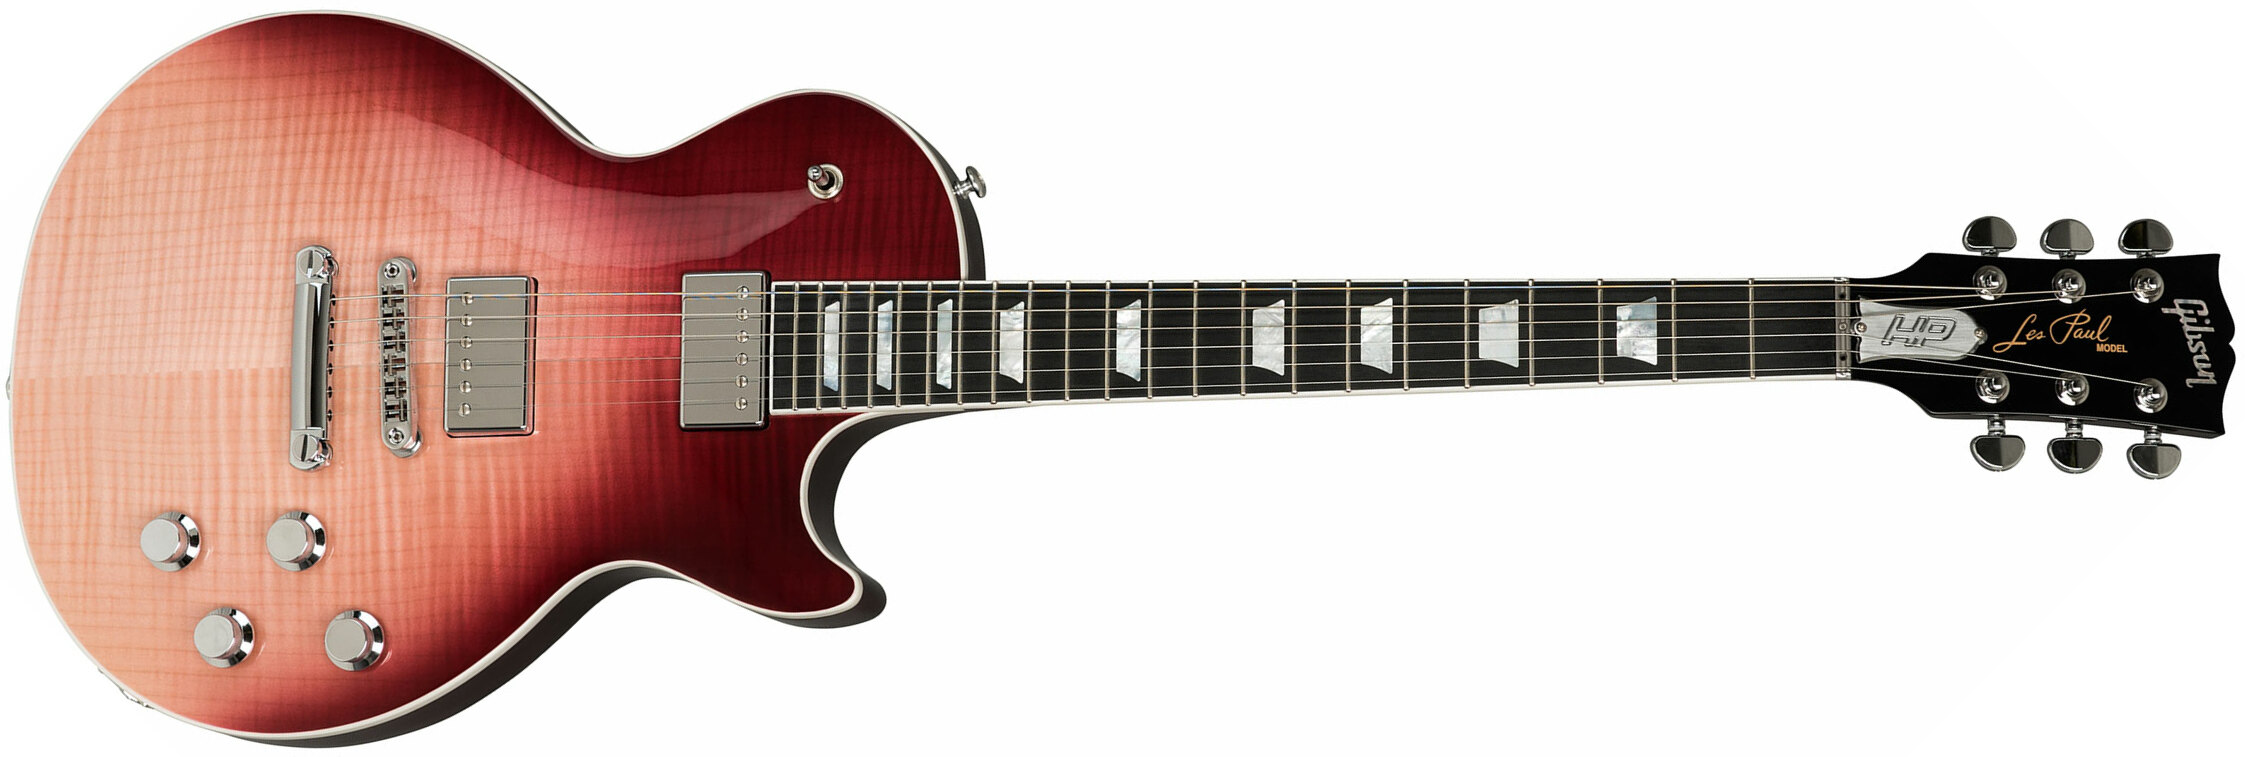 Gibson Les Paul Standard Hp-ii 2018 2h Ht Ric - Hot Pink Fade - Enkel gesneden elektrische gitaar - Main picture